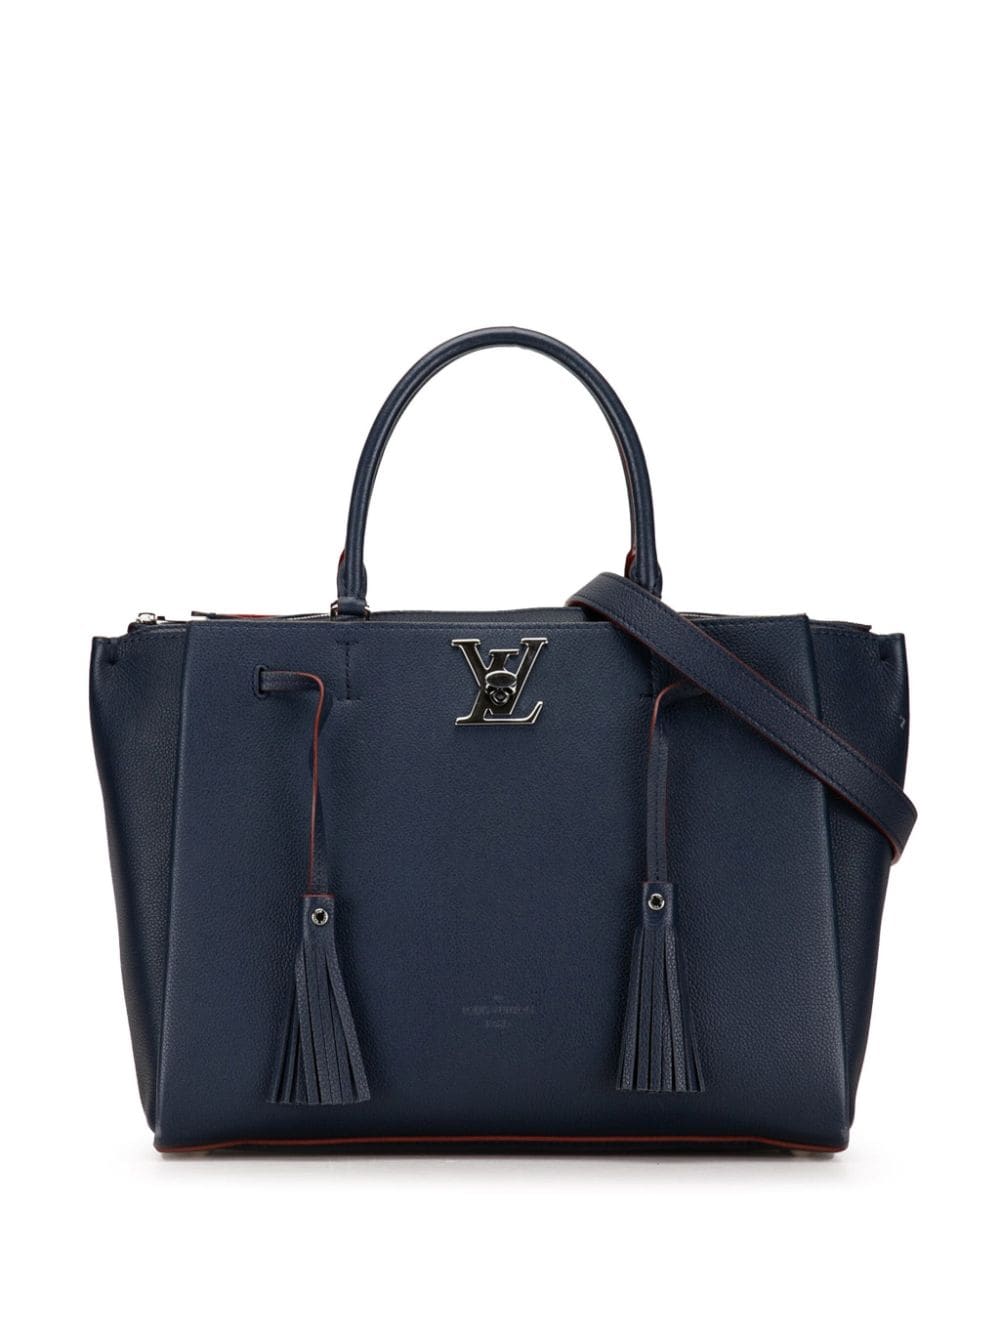 Louis Vuitton Pre-Owned 2018 Lockmeto satchel - Blue von Louis Vuitton Pre-Owned